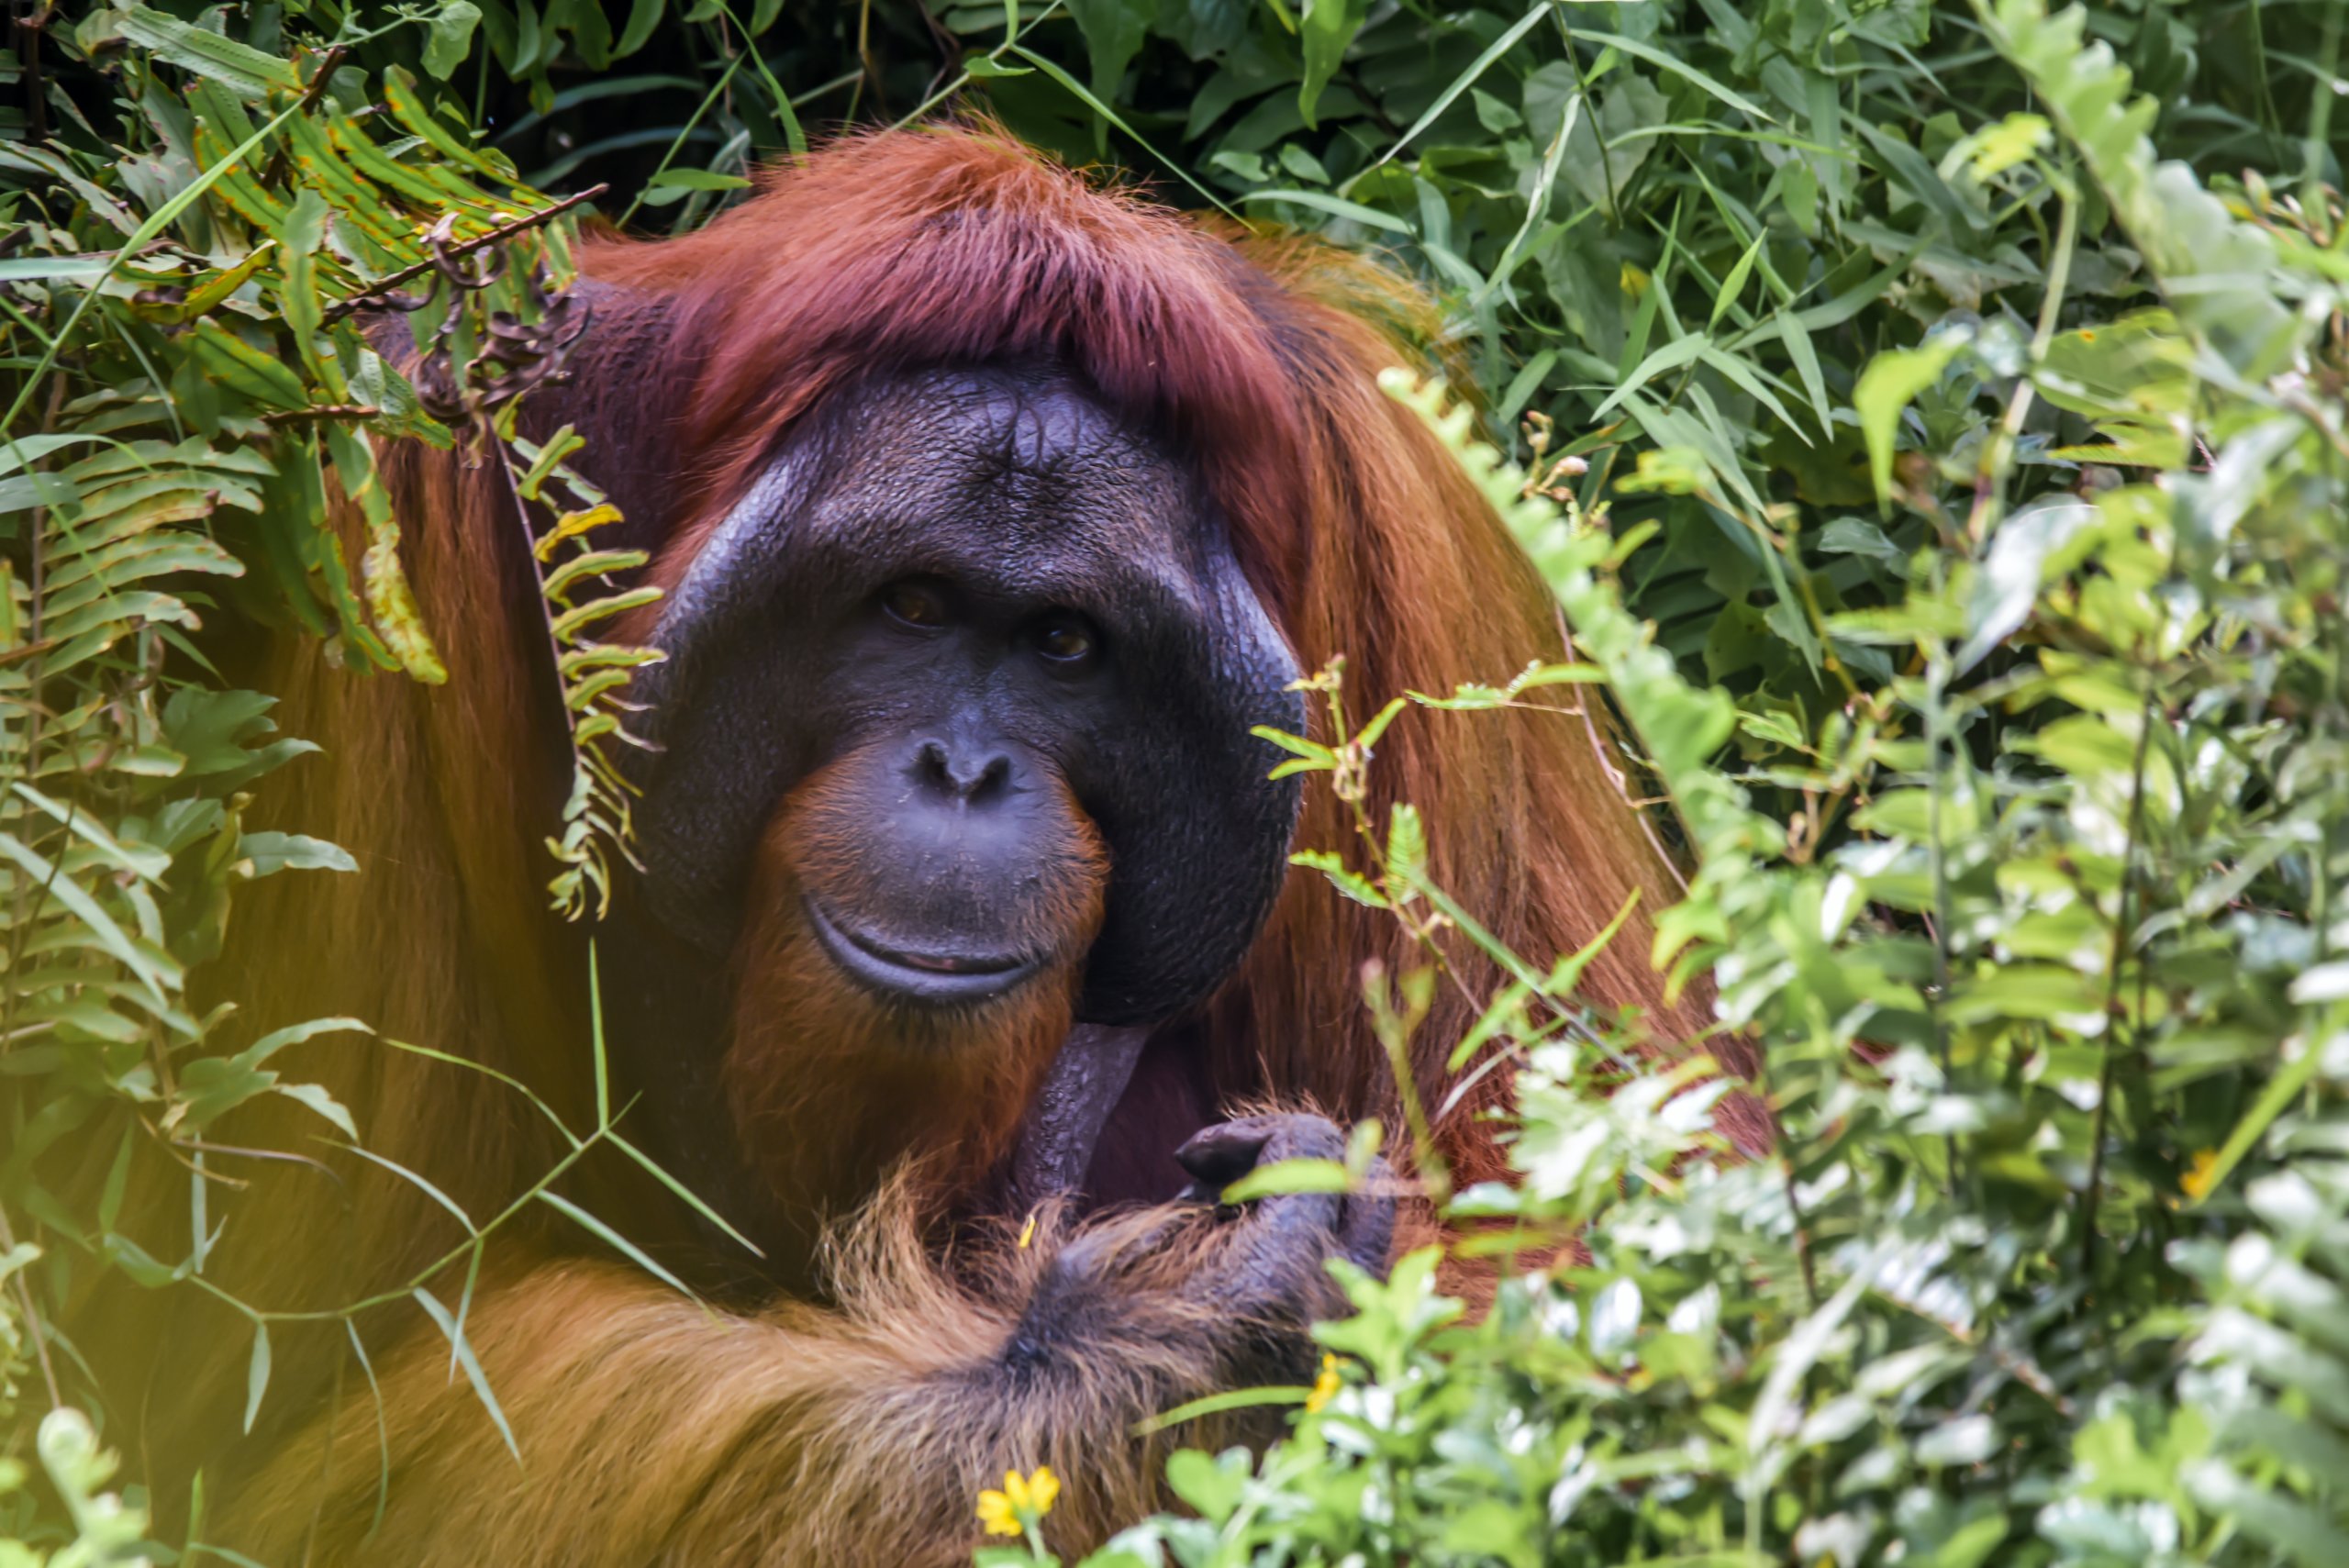 Majestic male Orangutan, Borneo.